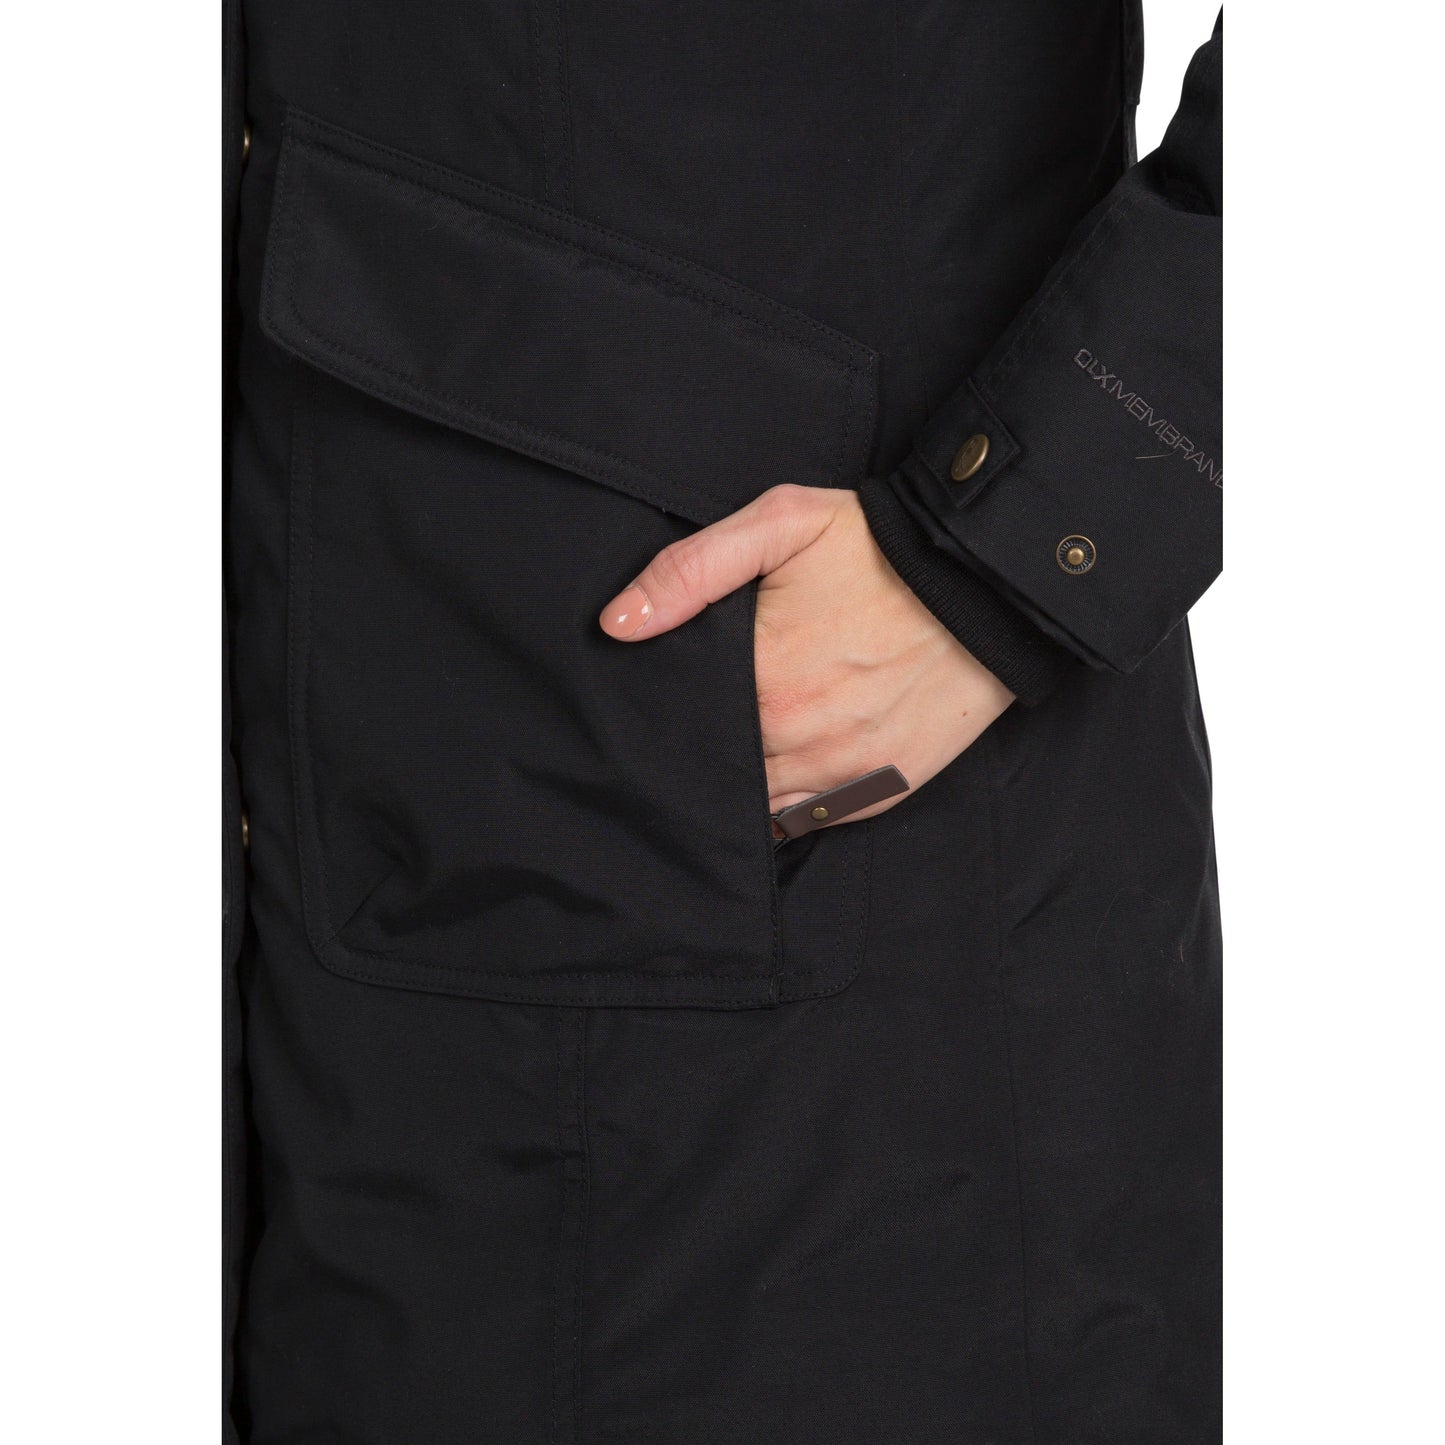 Women's Bettany DLX Waterproof Down Filled Parka Jacket in Black